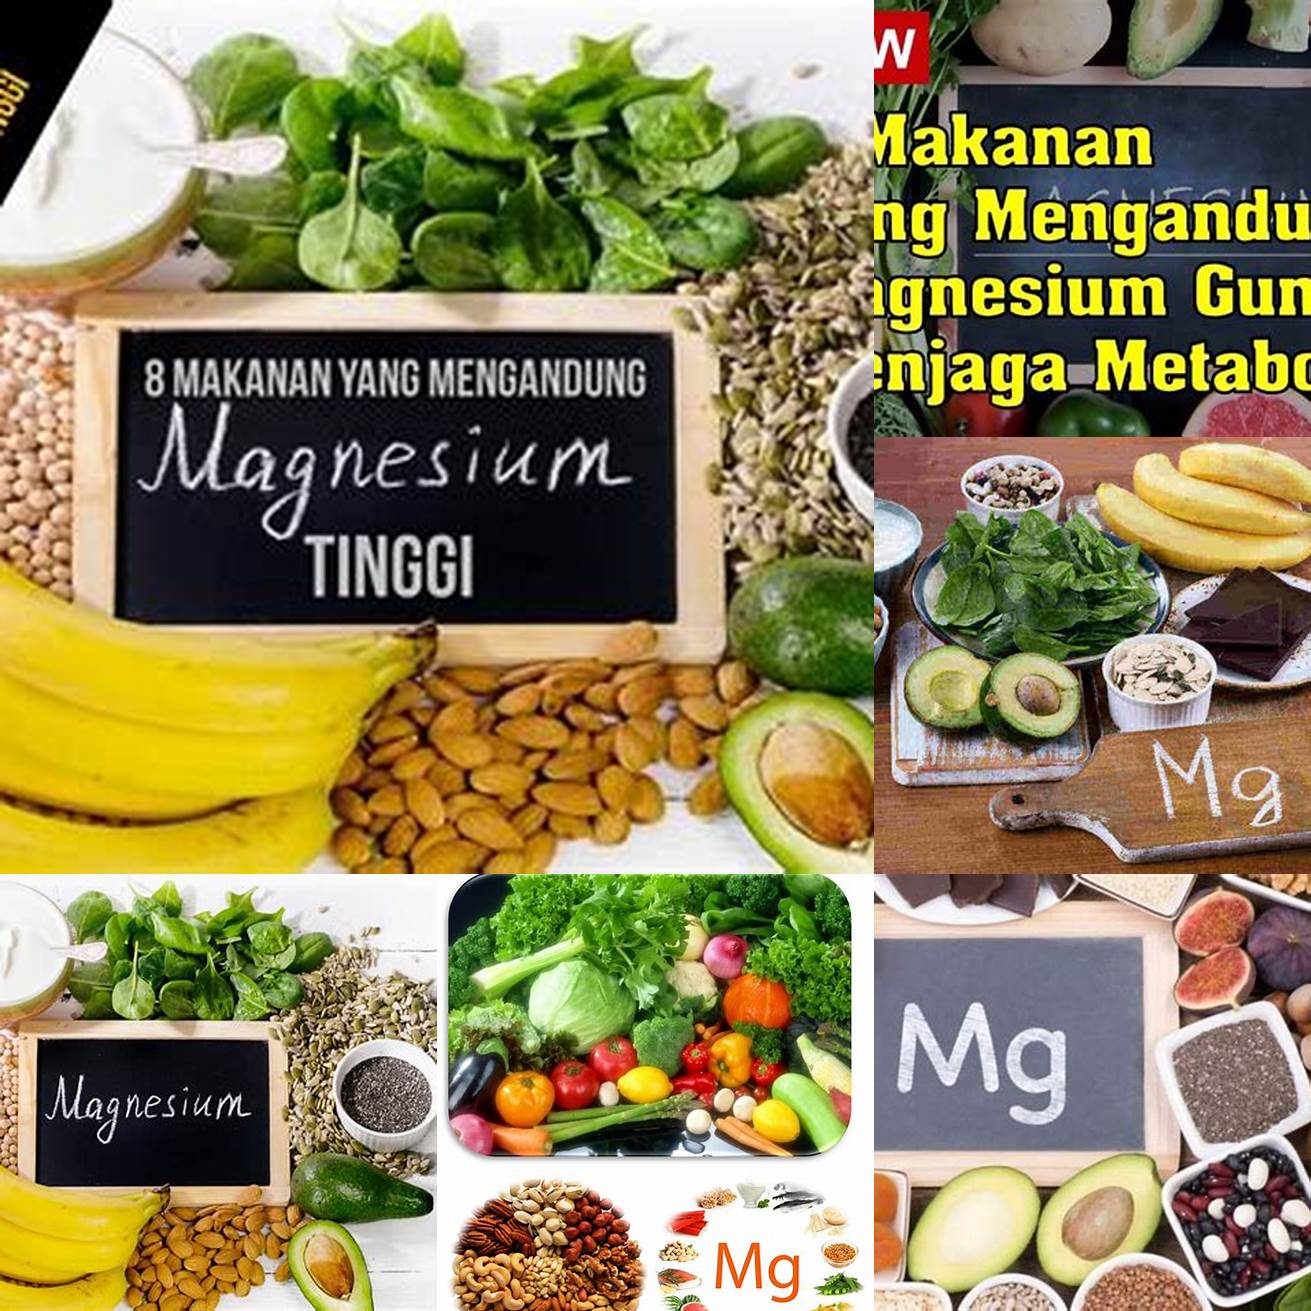 Konsumsi Makanan yang Mengandung Magnesium